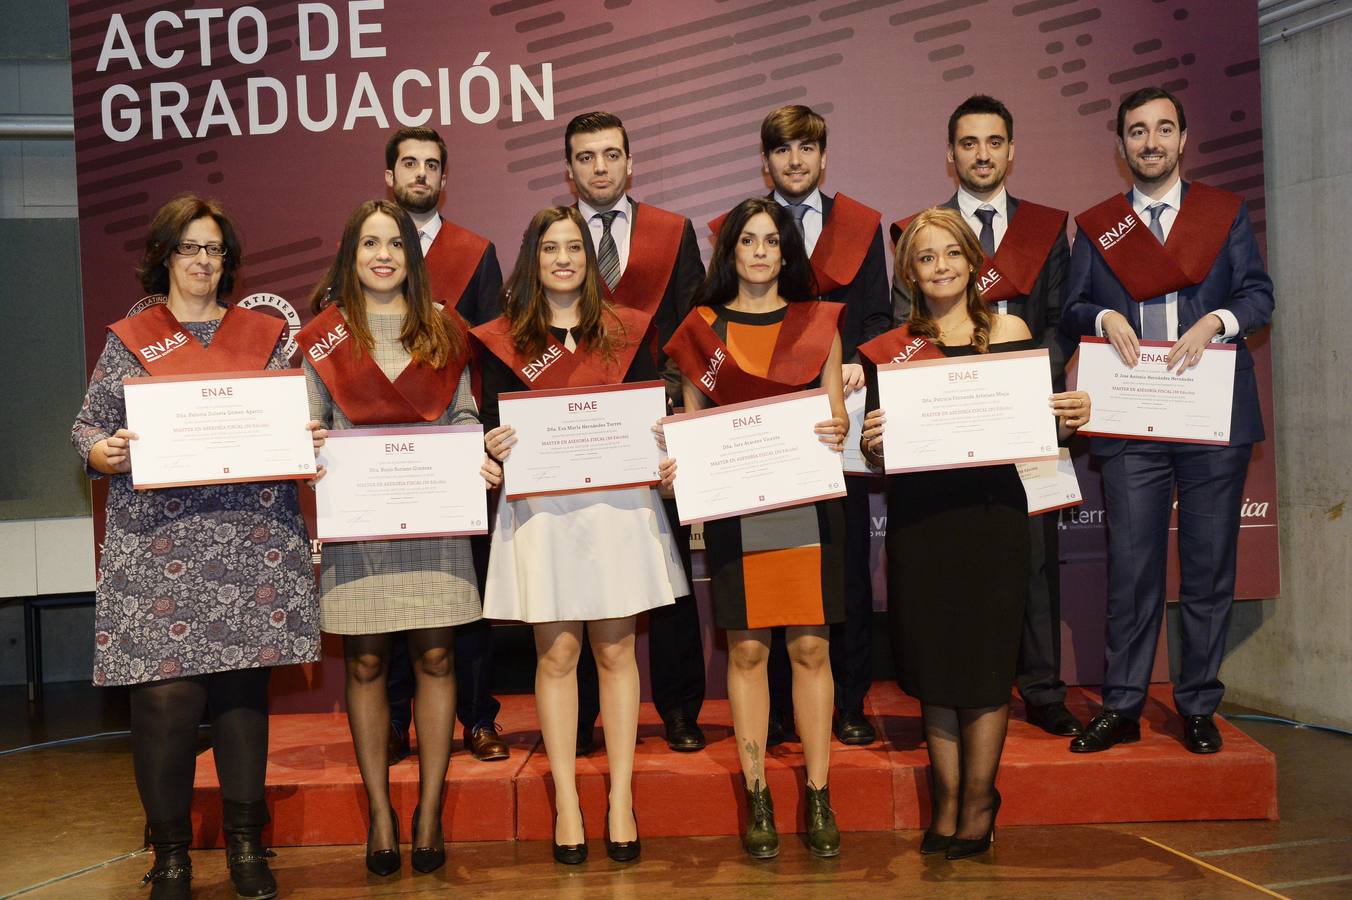 La Facultad de Economía y Empresa de la Universidad de Murcia acogió este viernes el acto de graduación de los alumnos de la ENAE Business Scho